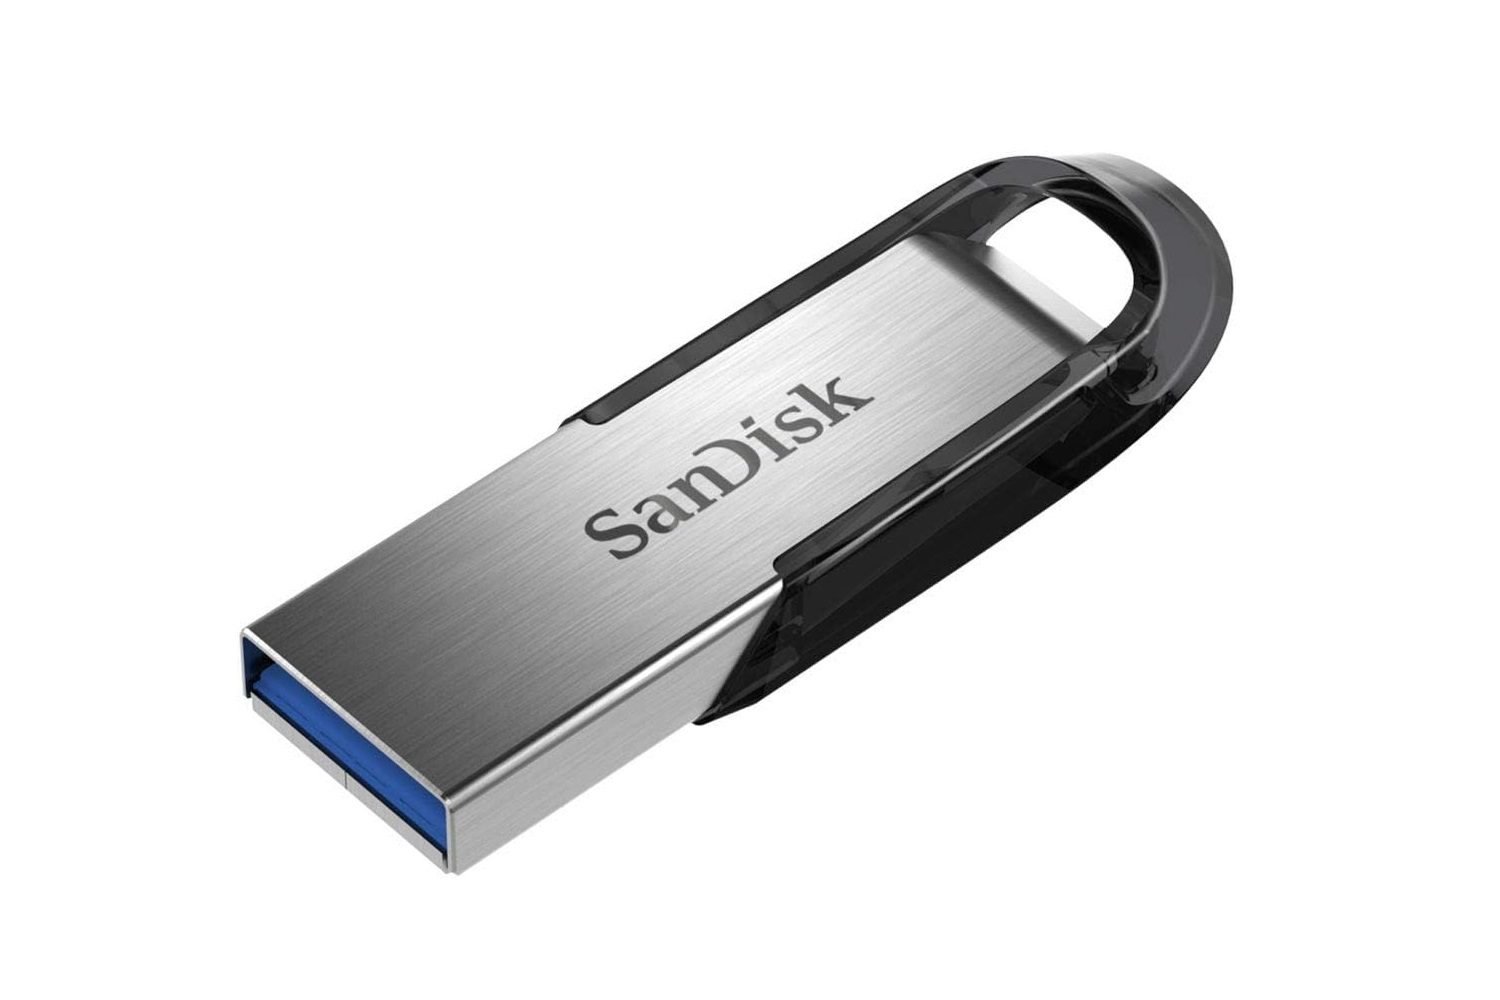 SAMSUNG - Clé USB Fit Plus - 256 Go